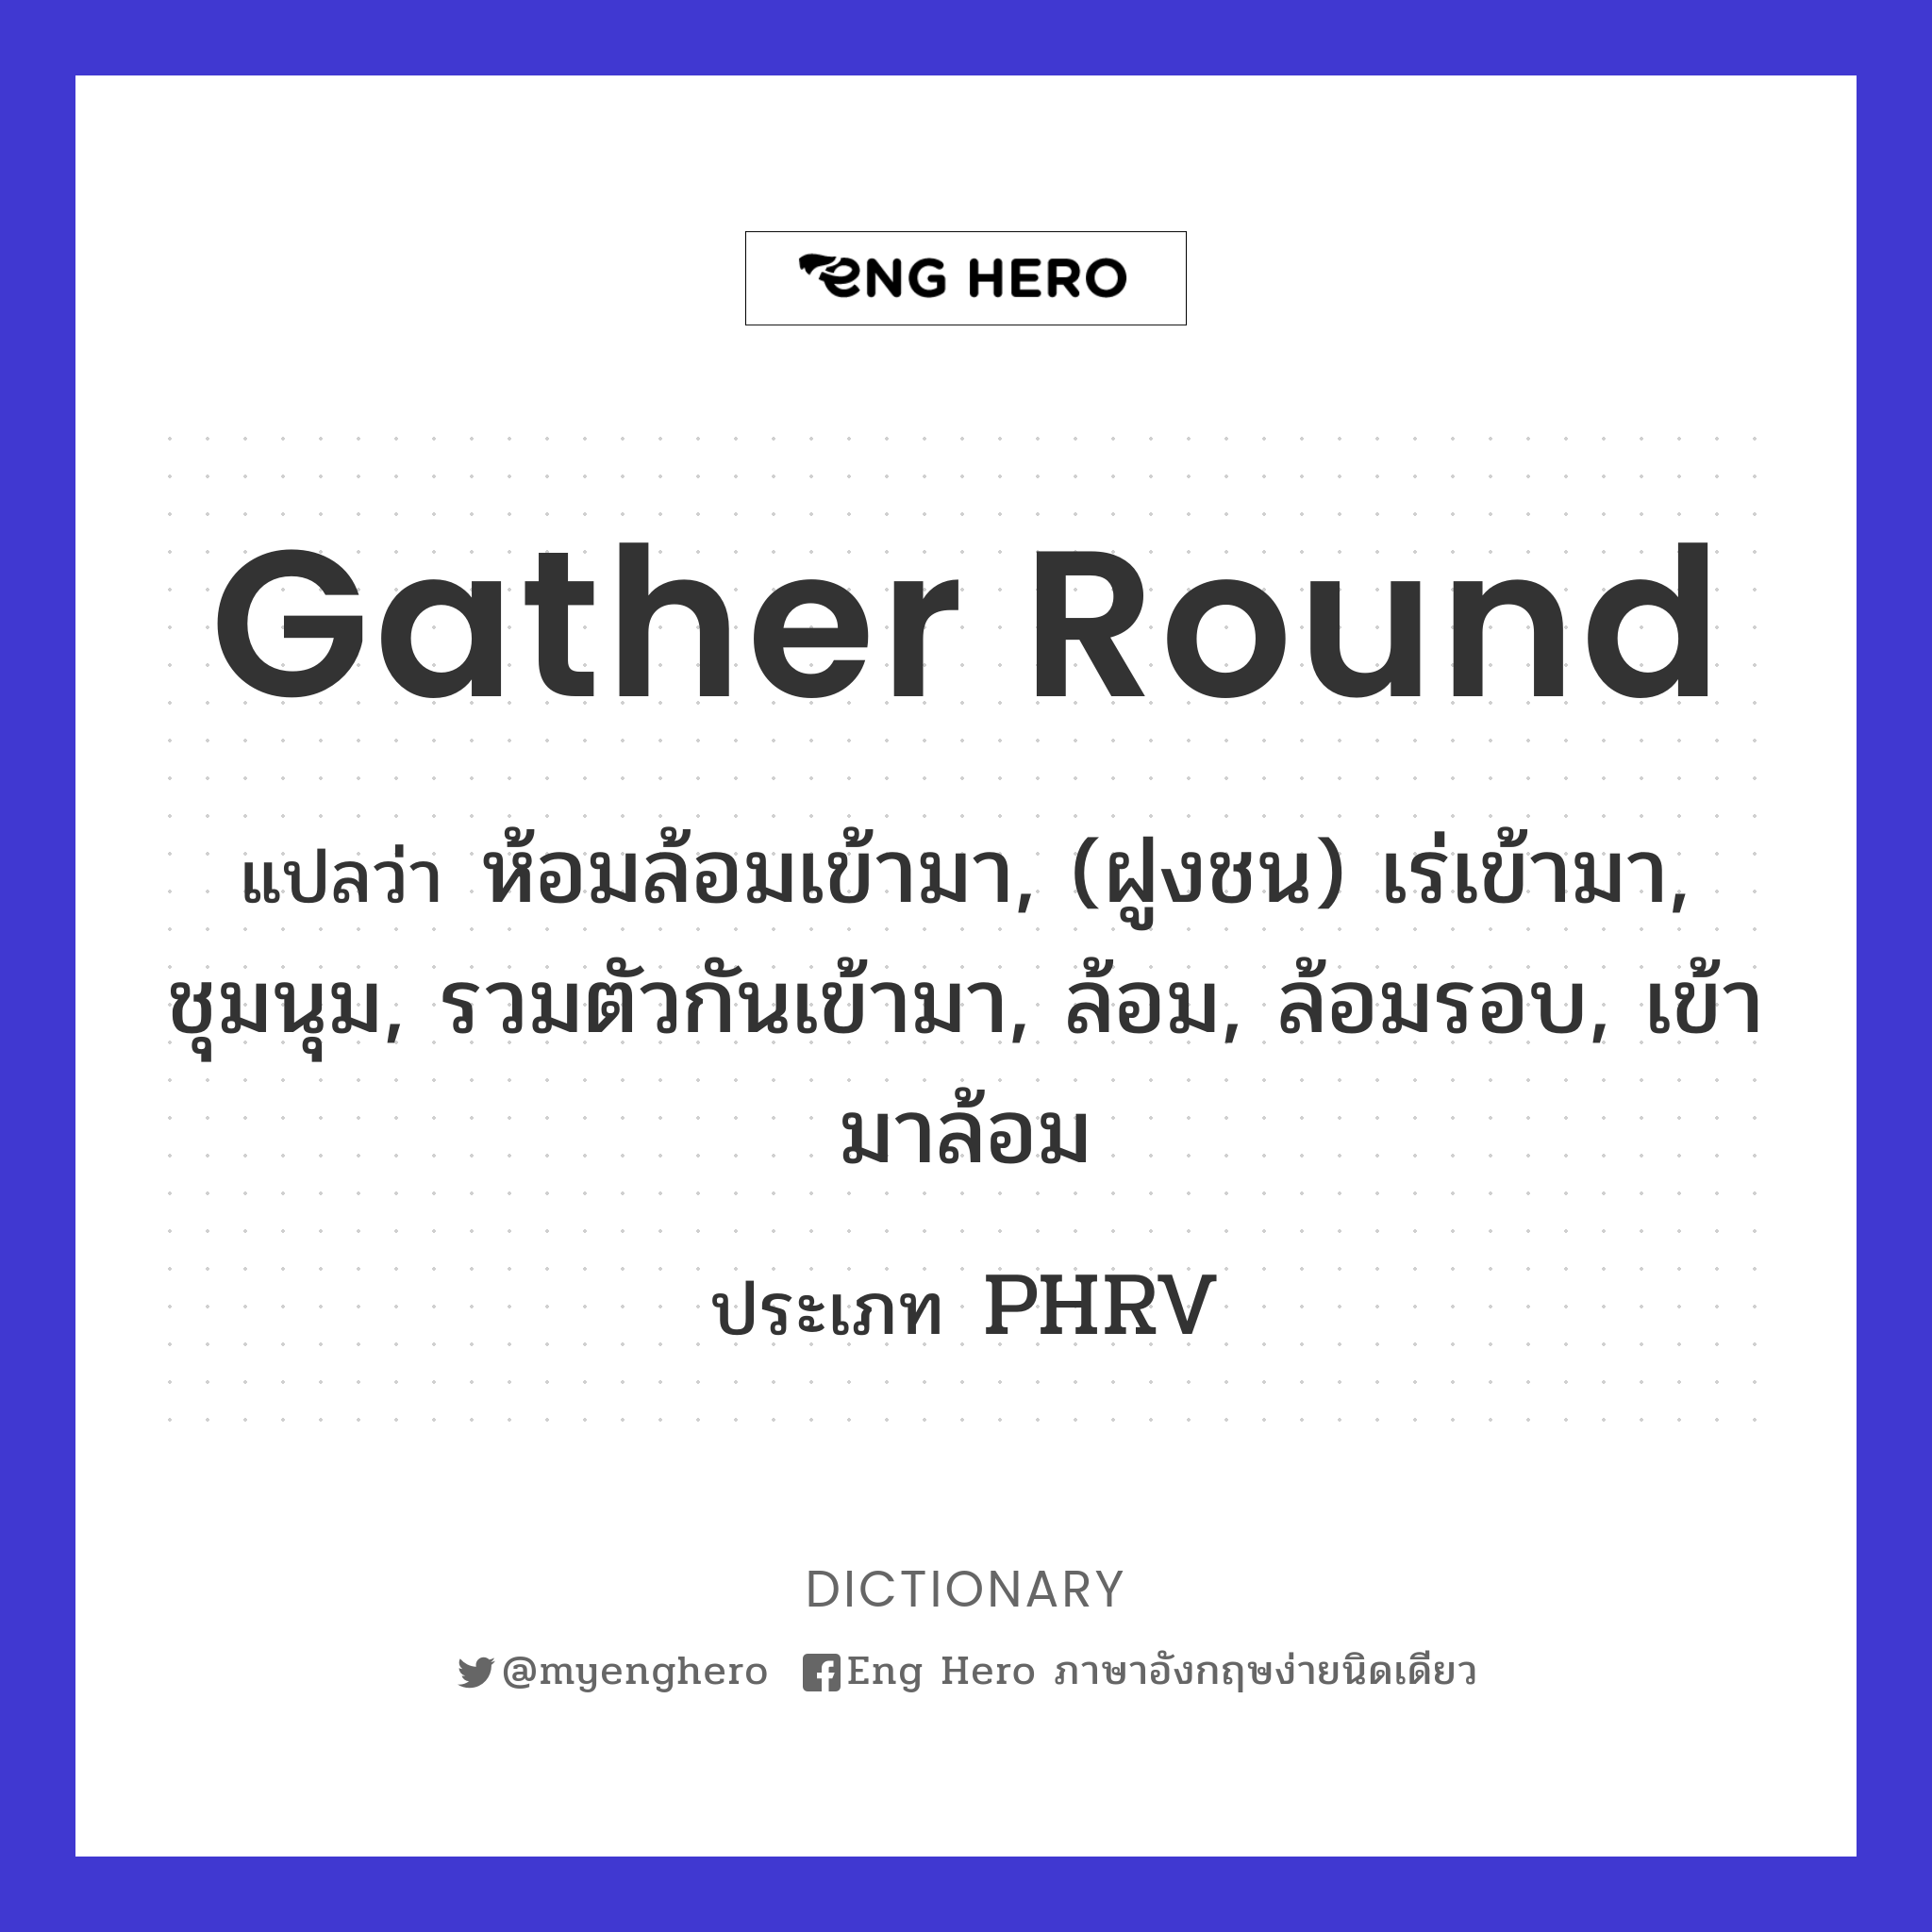 gather round